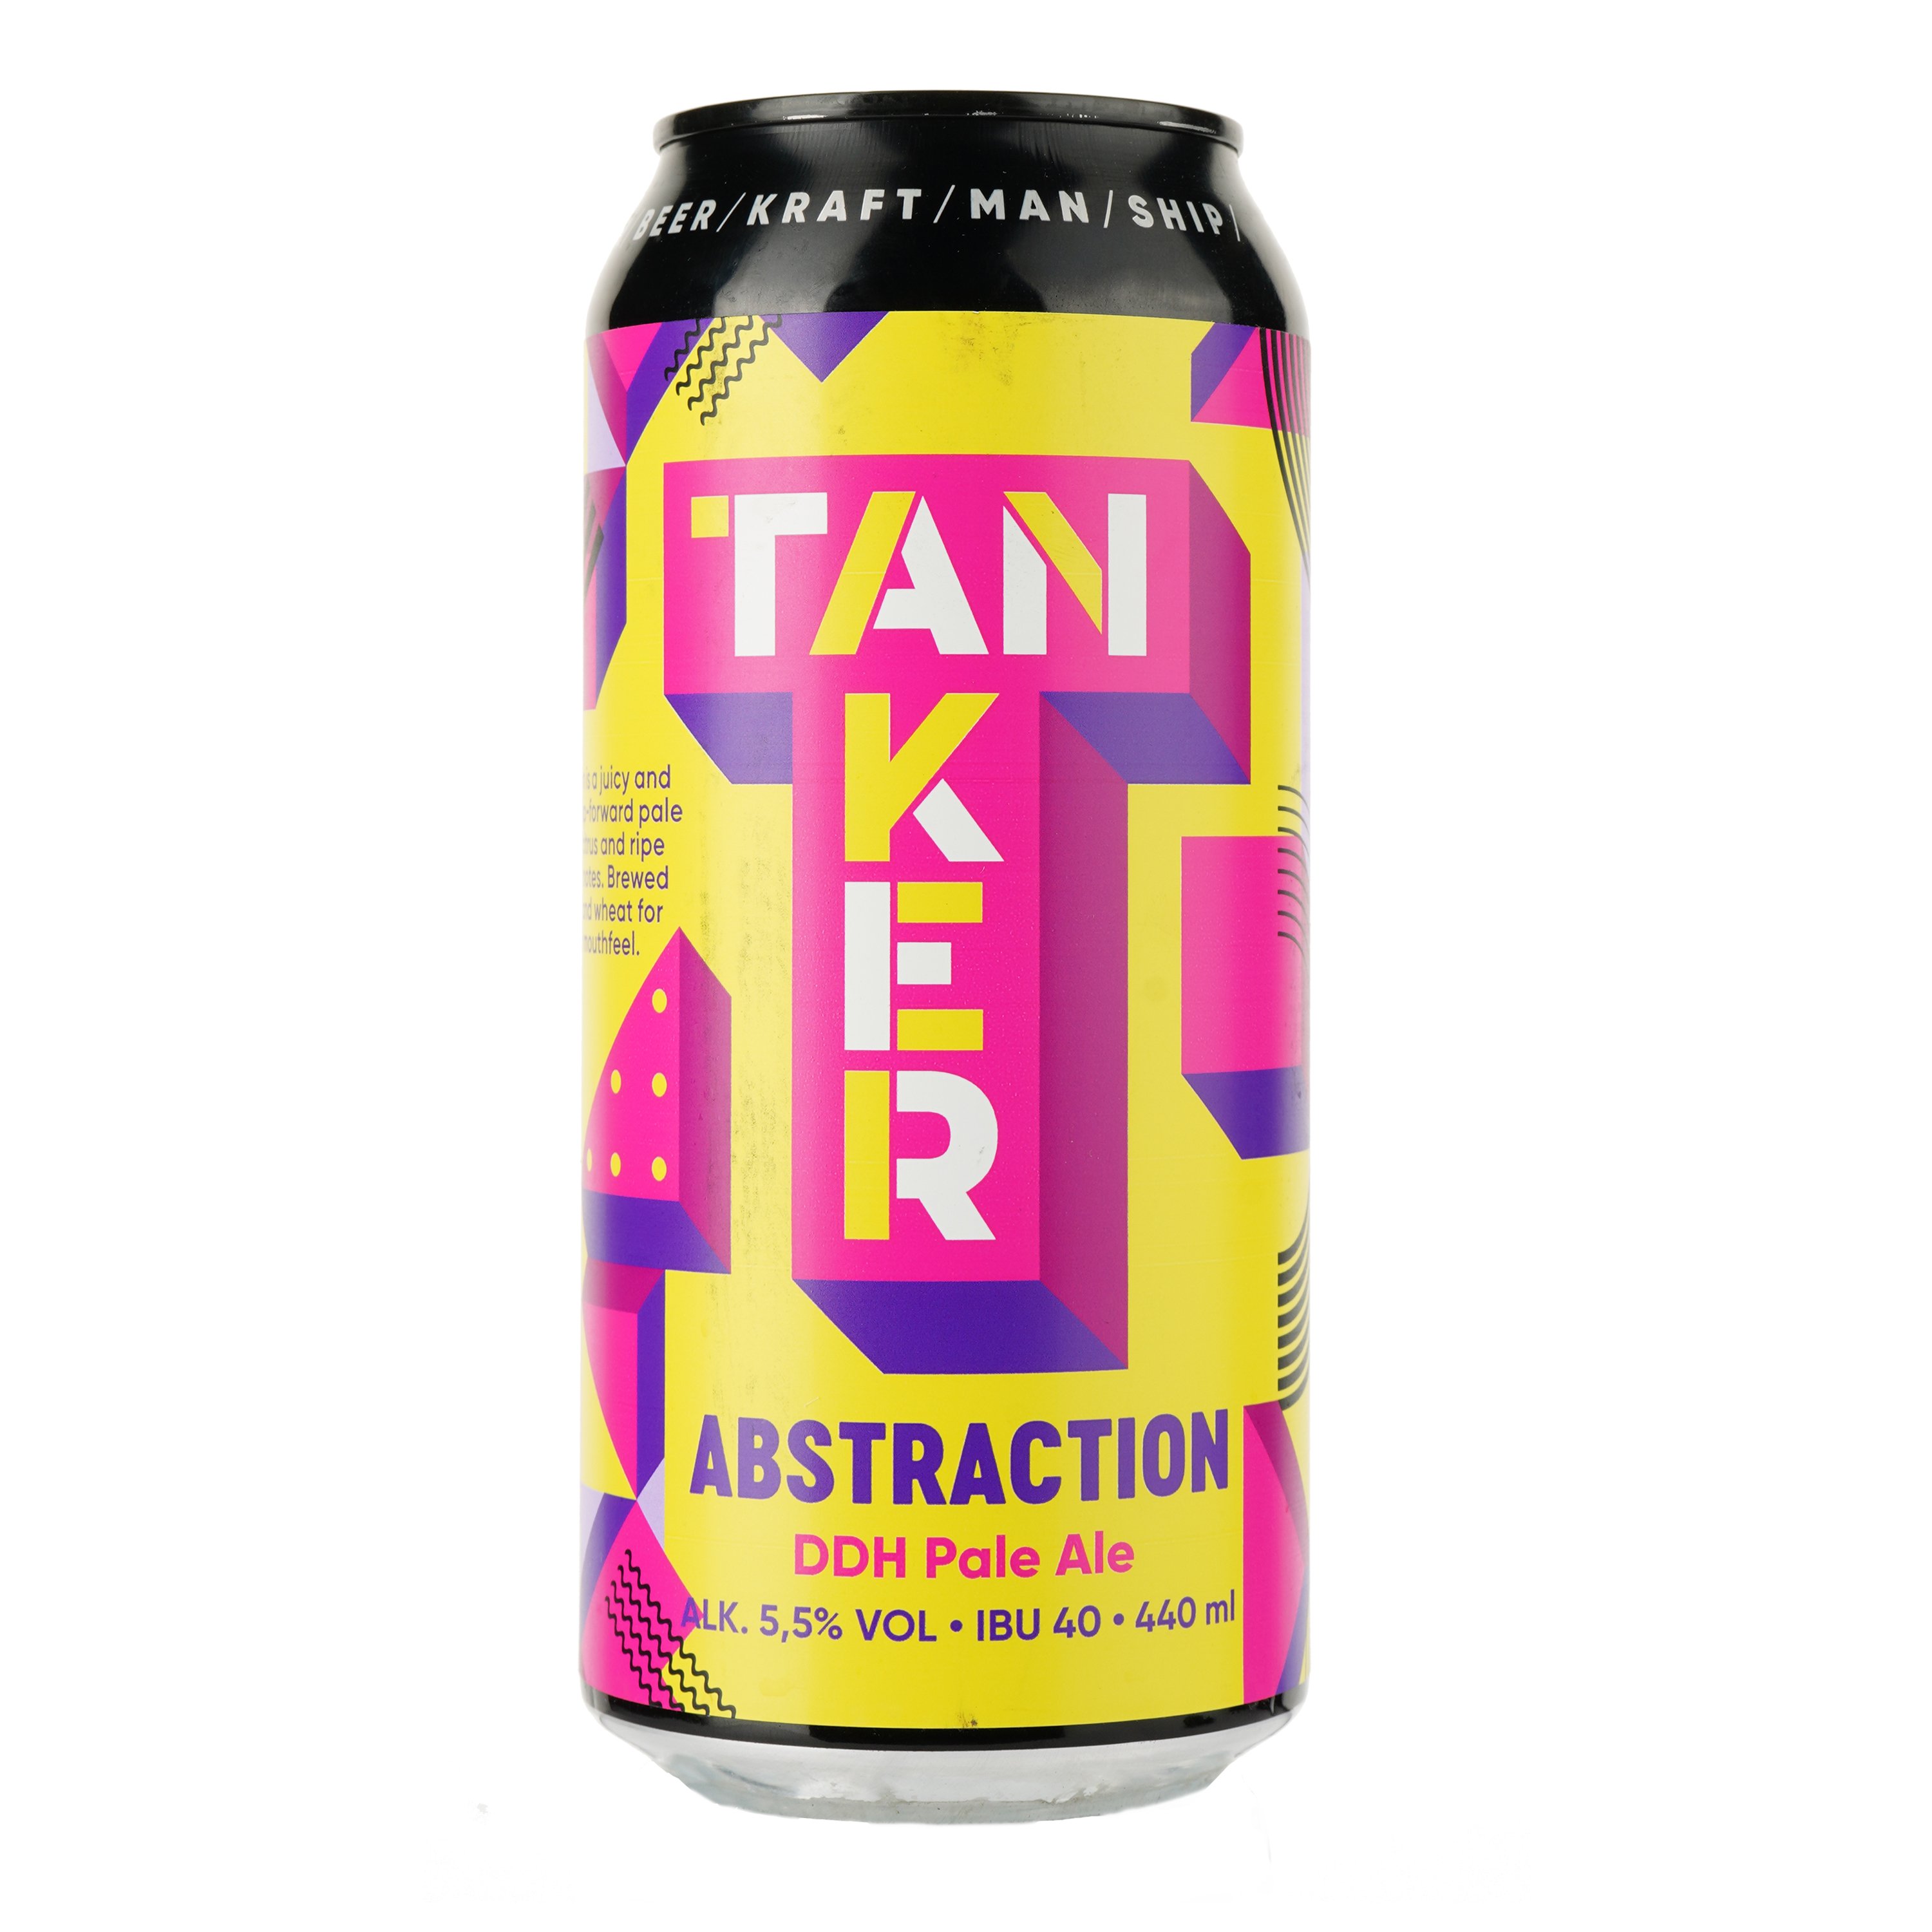 Пиво Tanker Abstract DDH Pale Ale, світле, нефільтроване, 5,5%, з/б, 0,44 л - фото 1